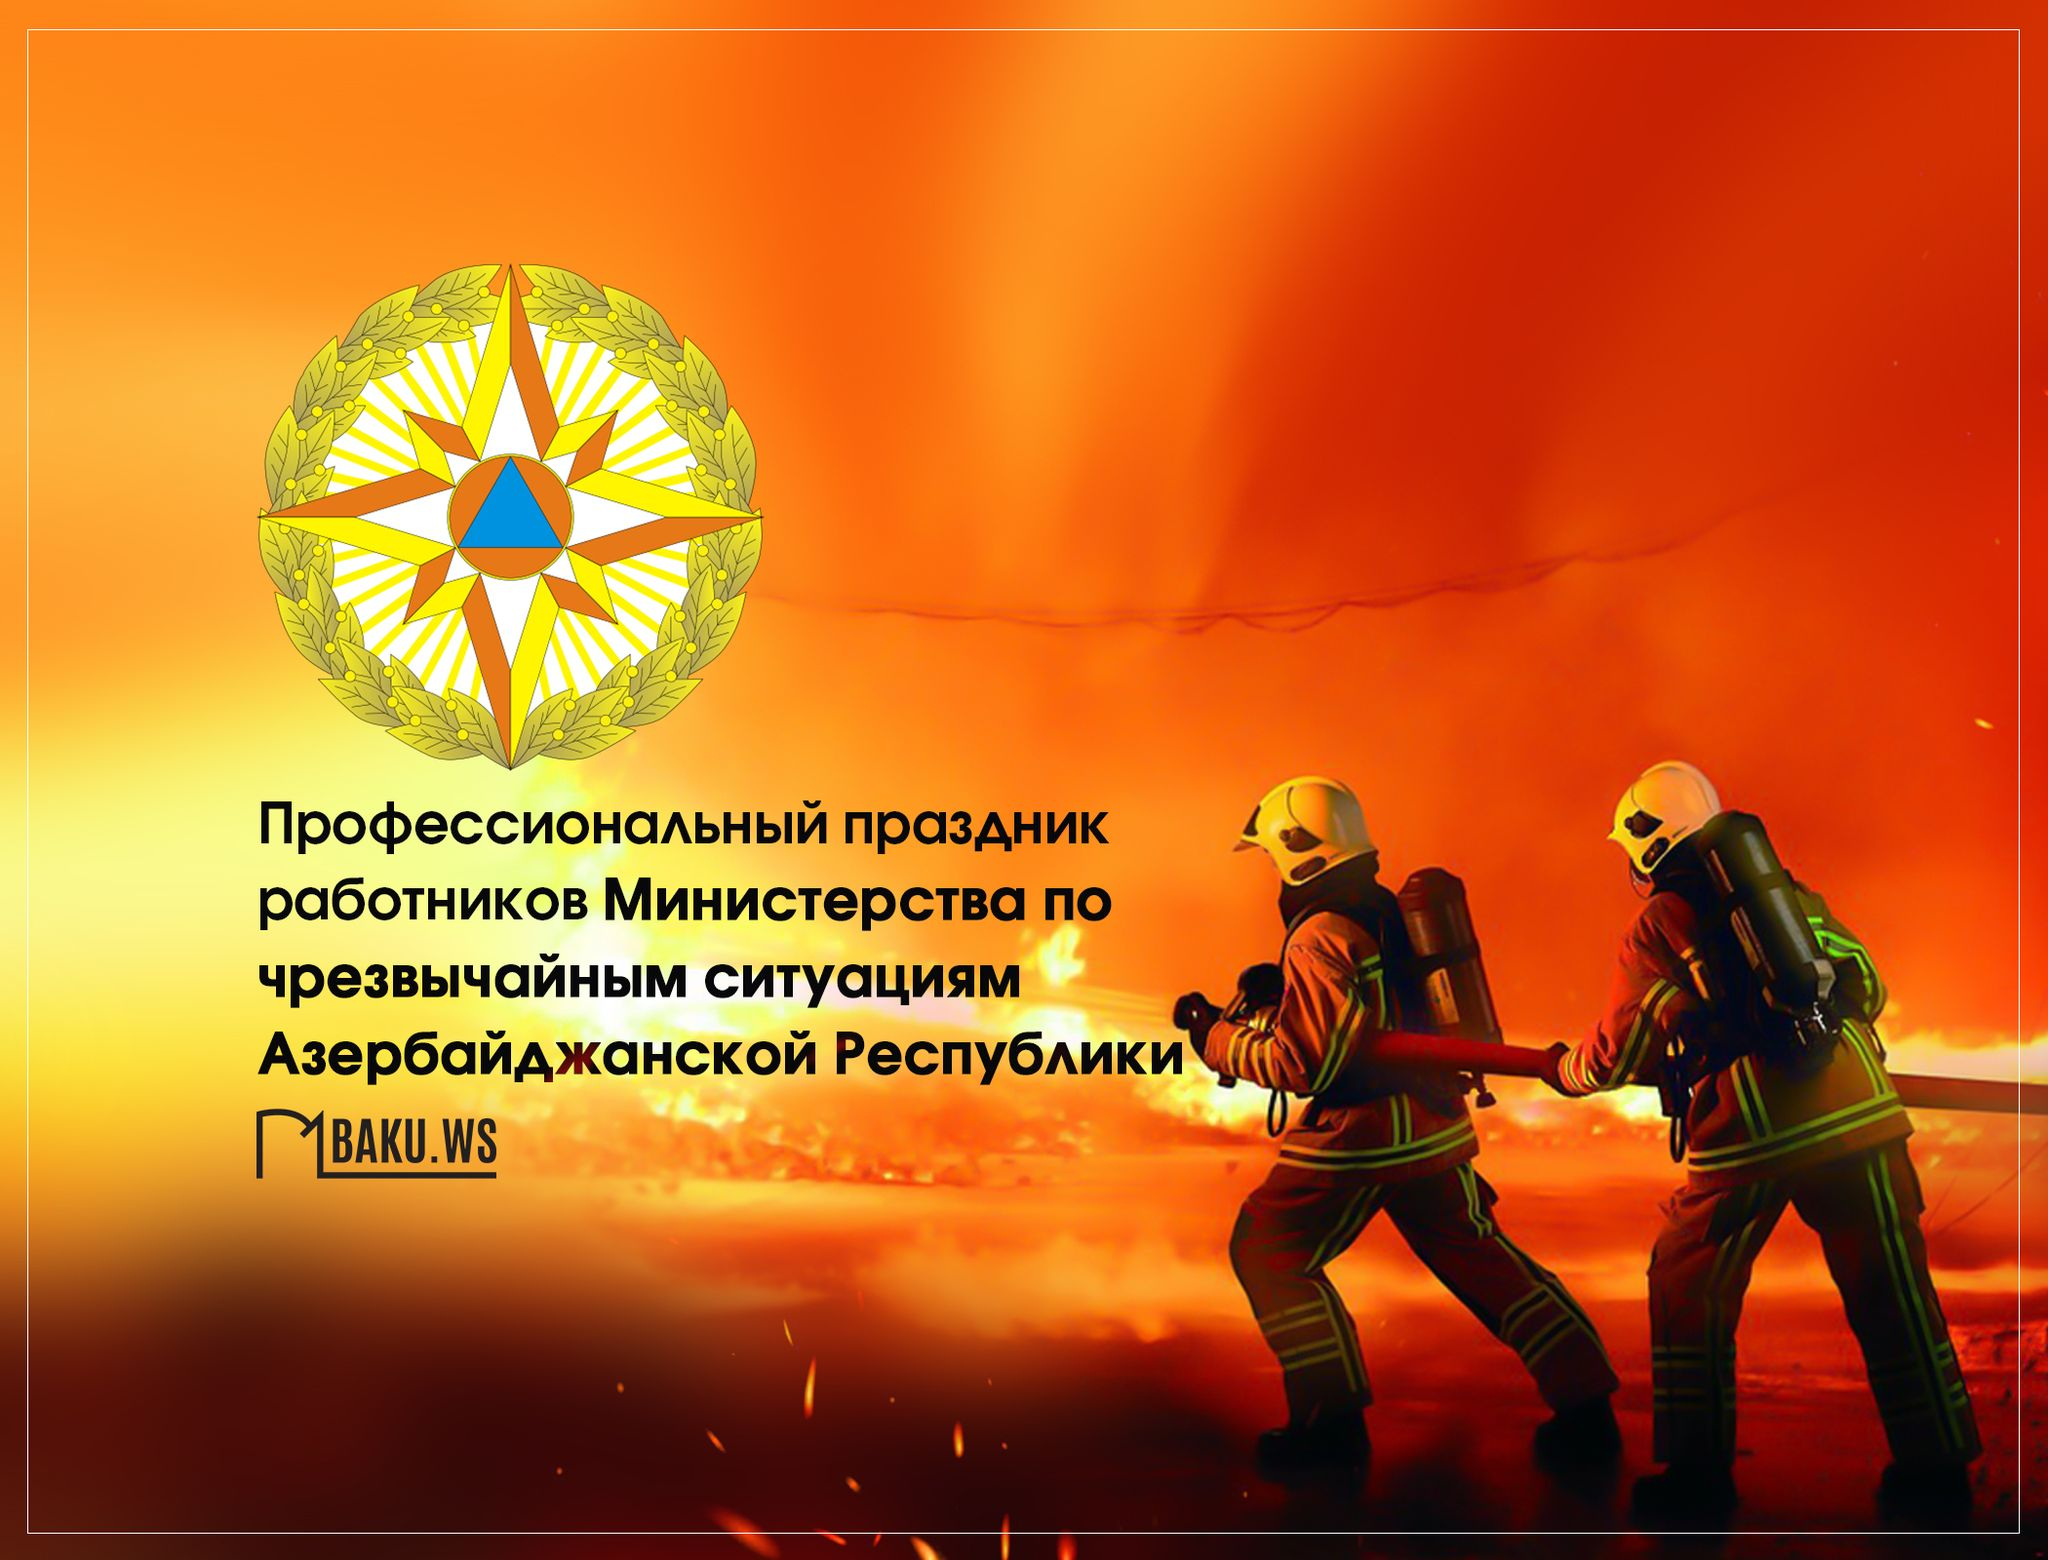 Сотрудники Министерства по чрезвычайным ситуациям отмечают профессиональный праздник